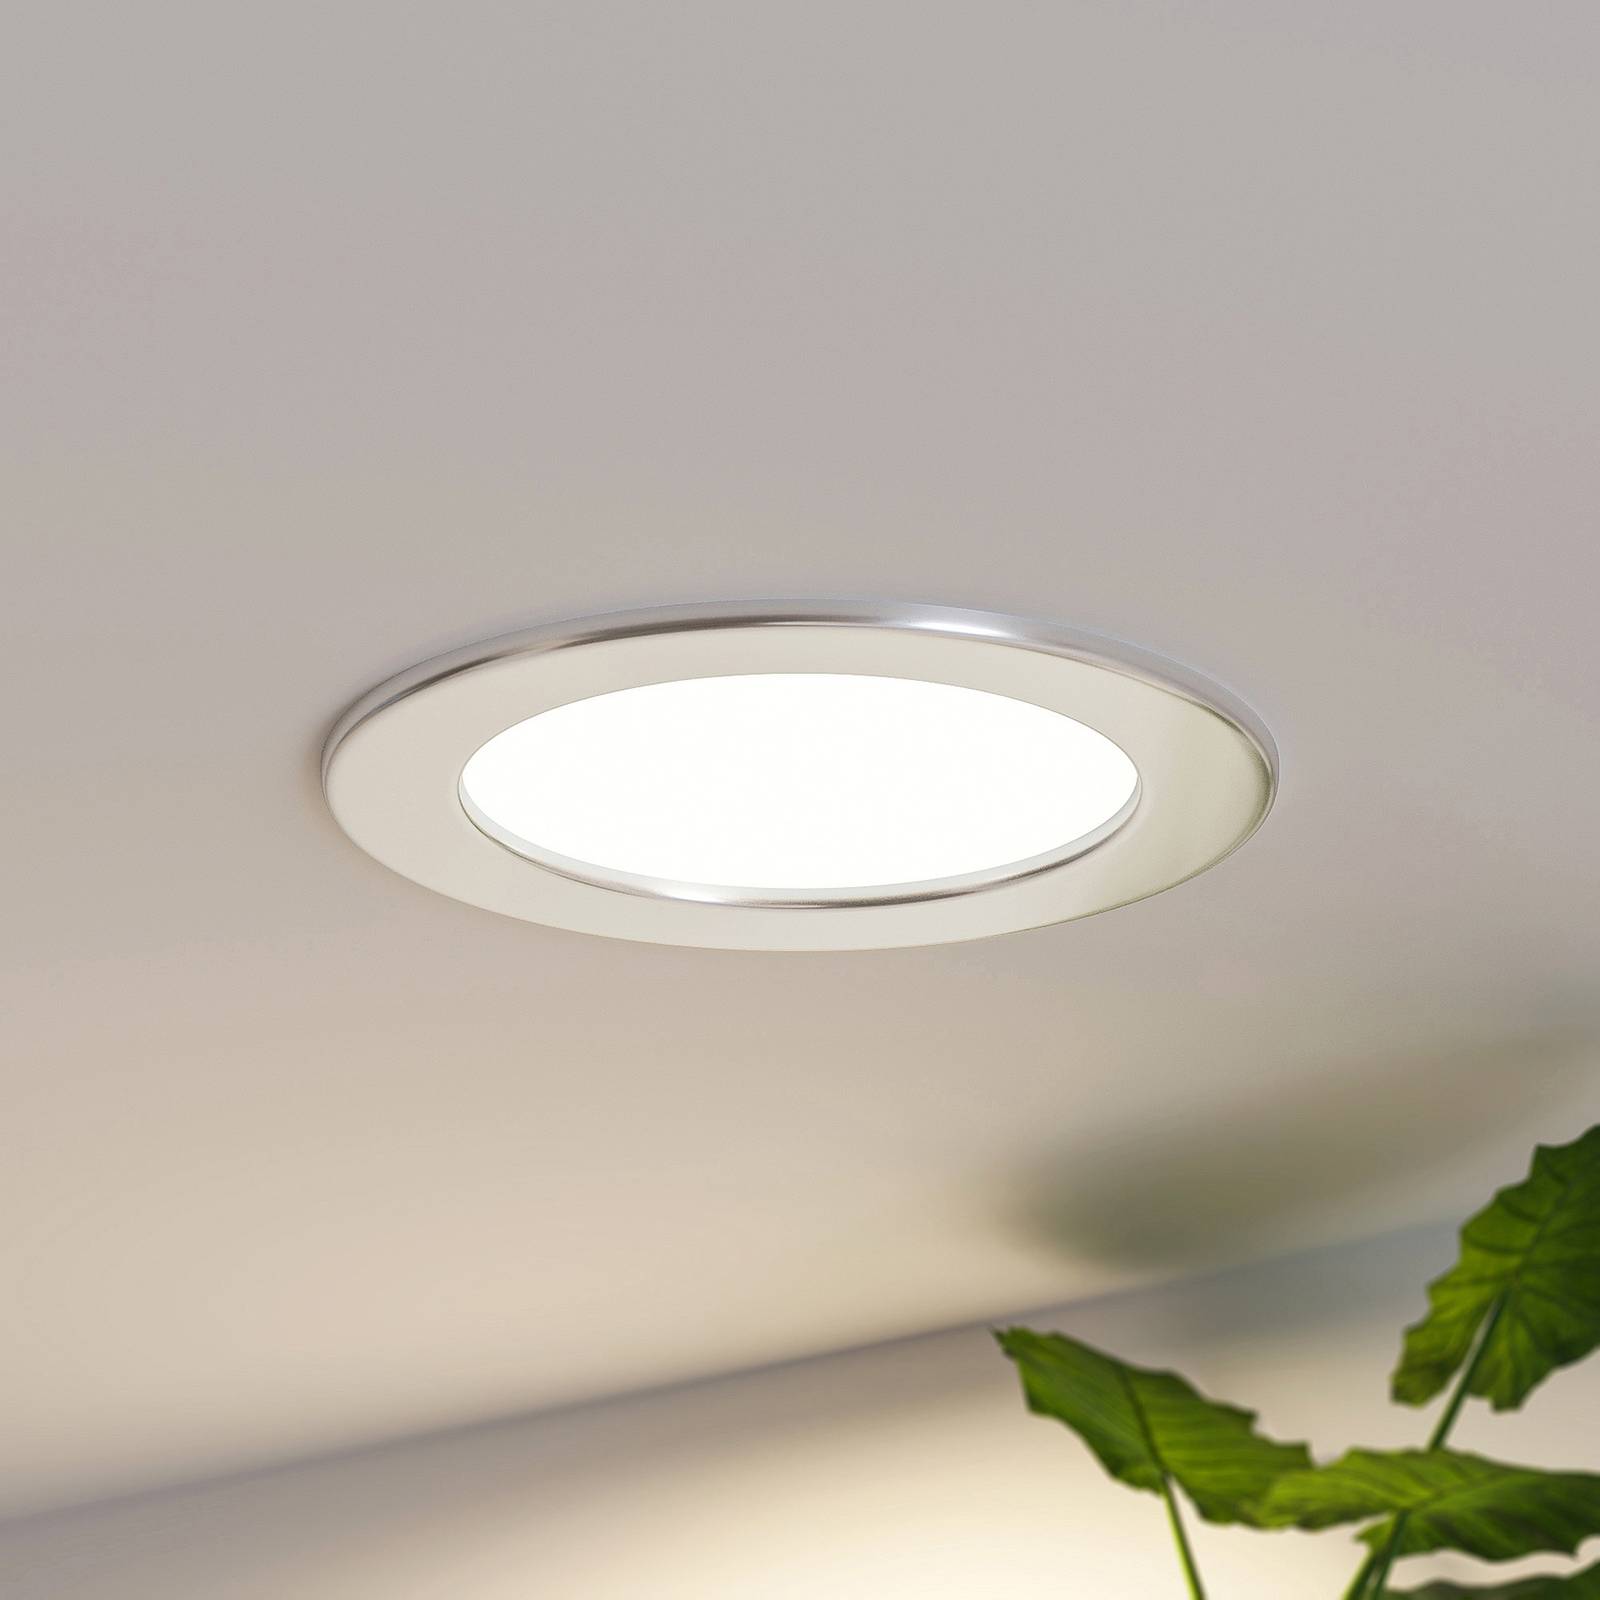 Prios LED vstavané svietidlo Cadance, strieborné, 17 cm, 3 jednotky,